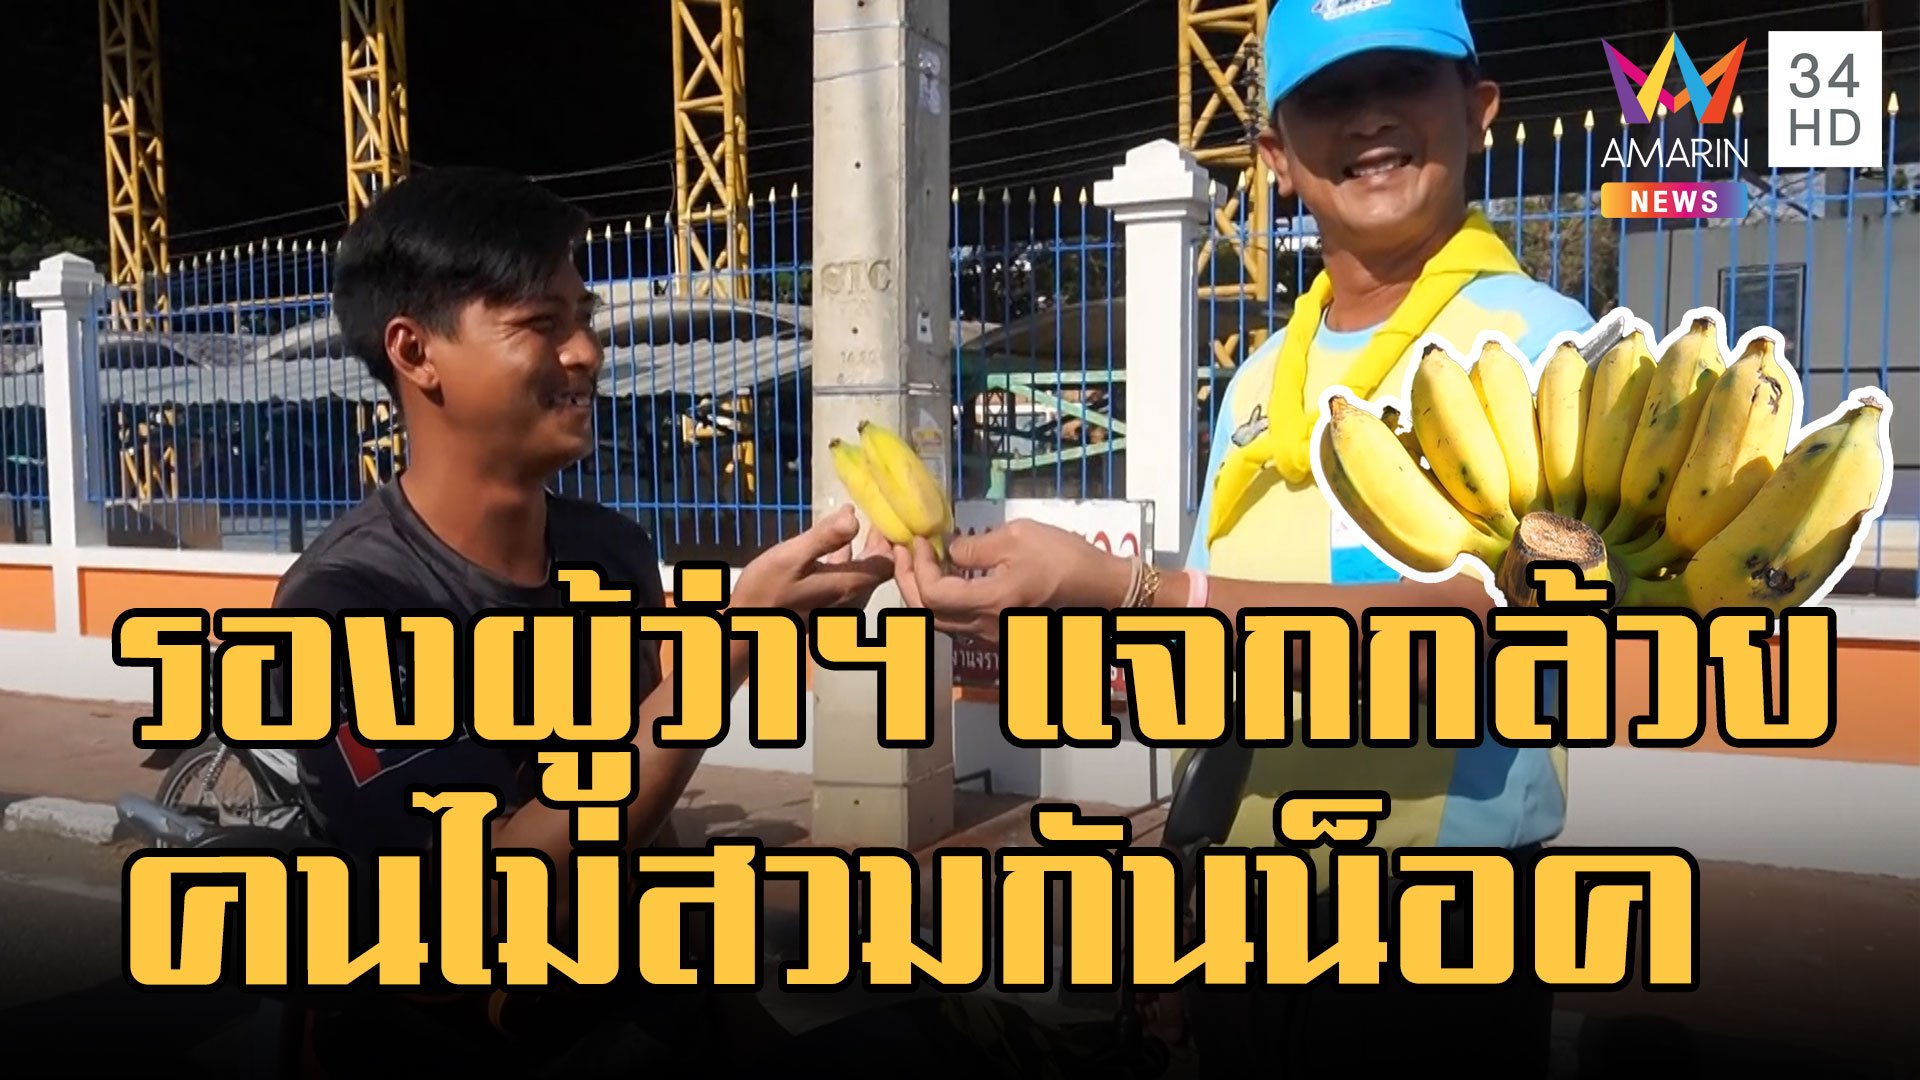 รองผู้ว่าฯ ตั้งด่านแจกกล้วย คนไม่ใส่หมวกกันน็อค ป้องกันอุบัติเหตุ | ข่าวอรุณอมรินทร์ | 30 ธ.ค. 65 | AMARIN TVHD34